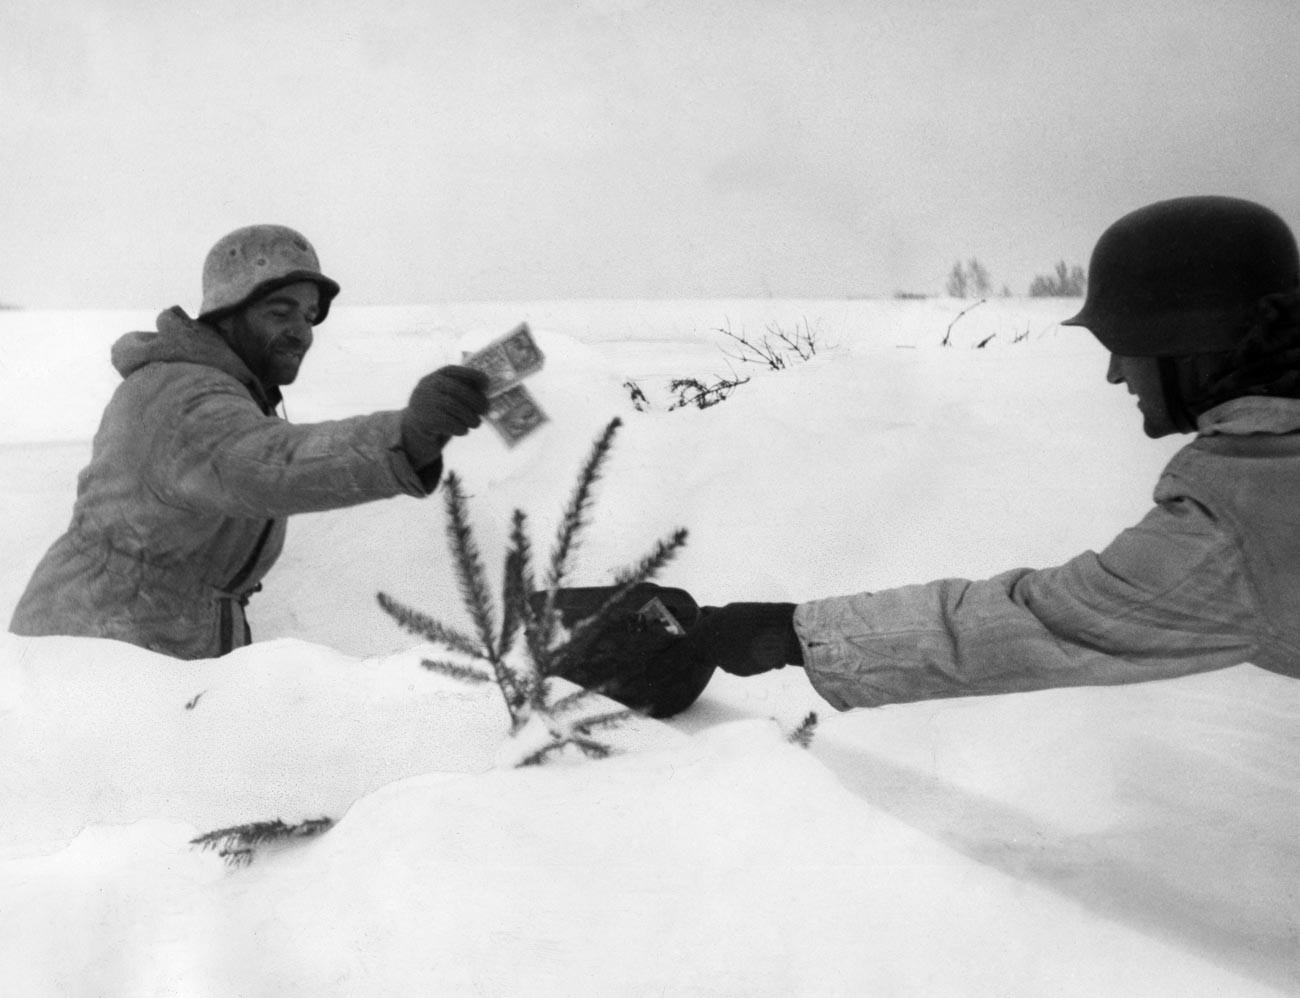 Soldati delle SS danesi in Curlandia, febbraio 1945